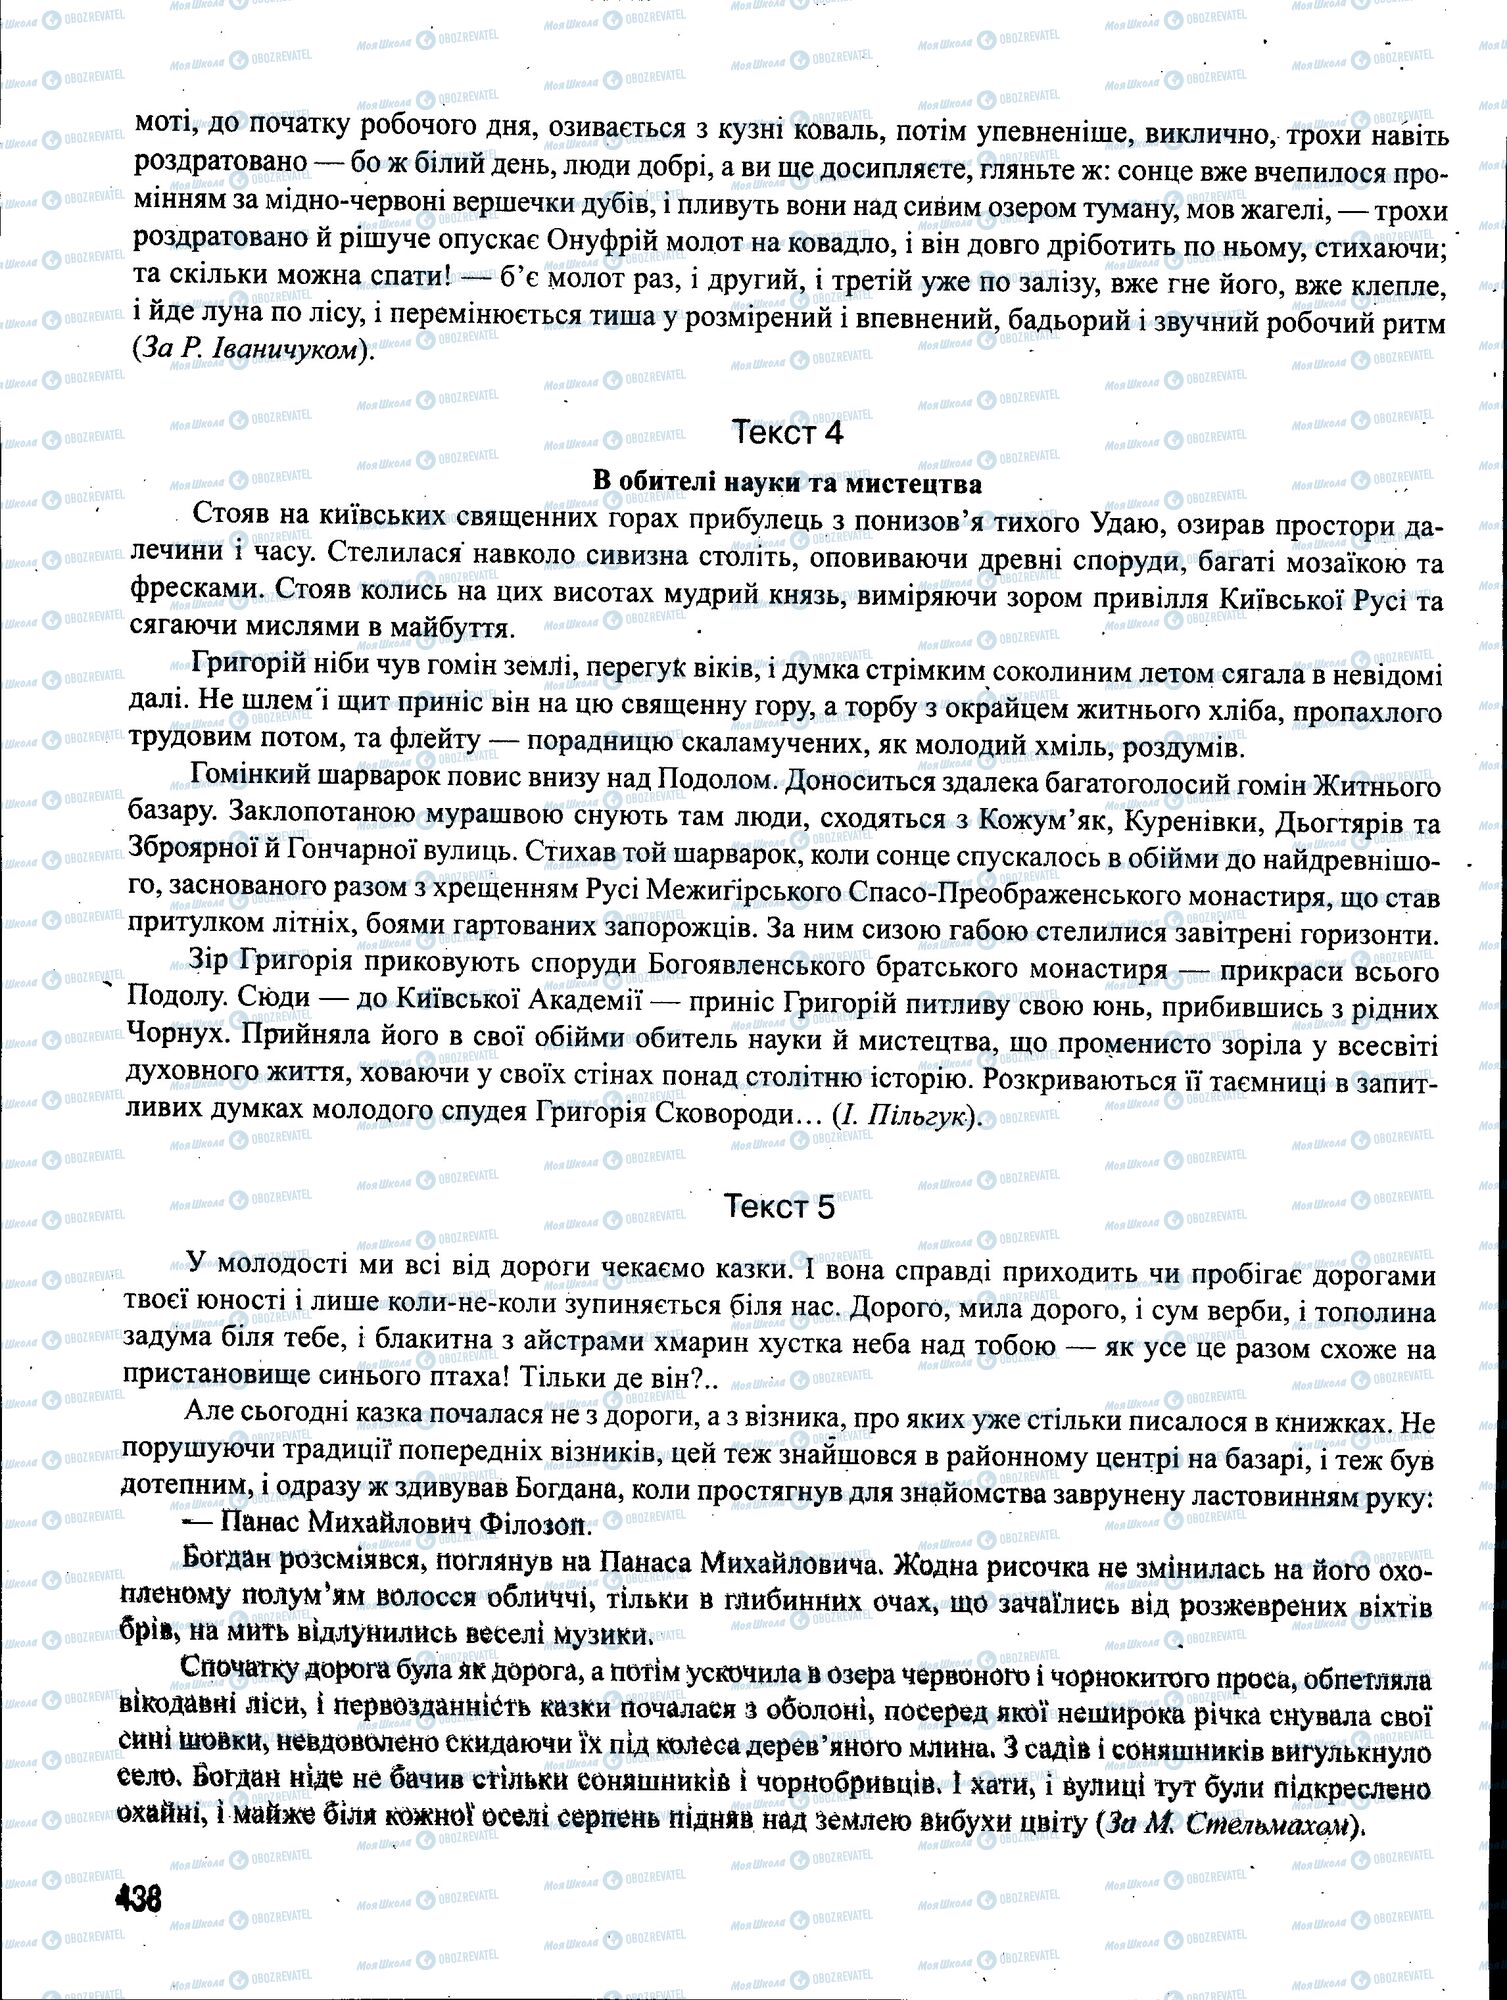 ЗНО Укр мова 11 класс страница 438